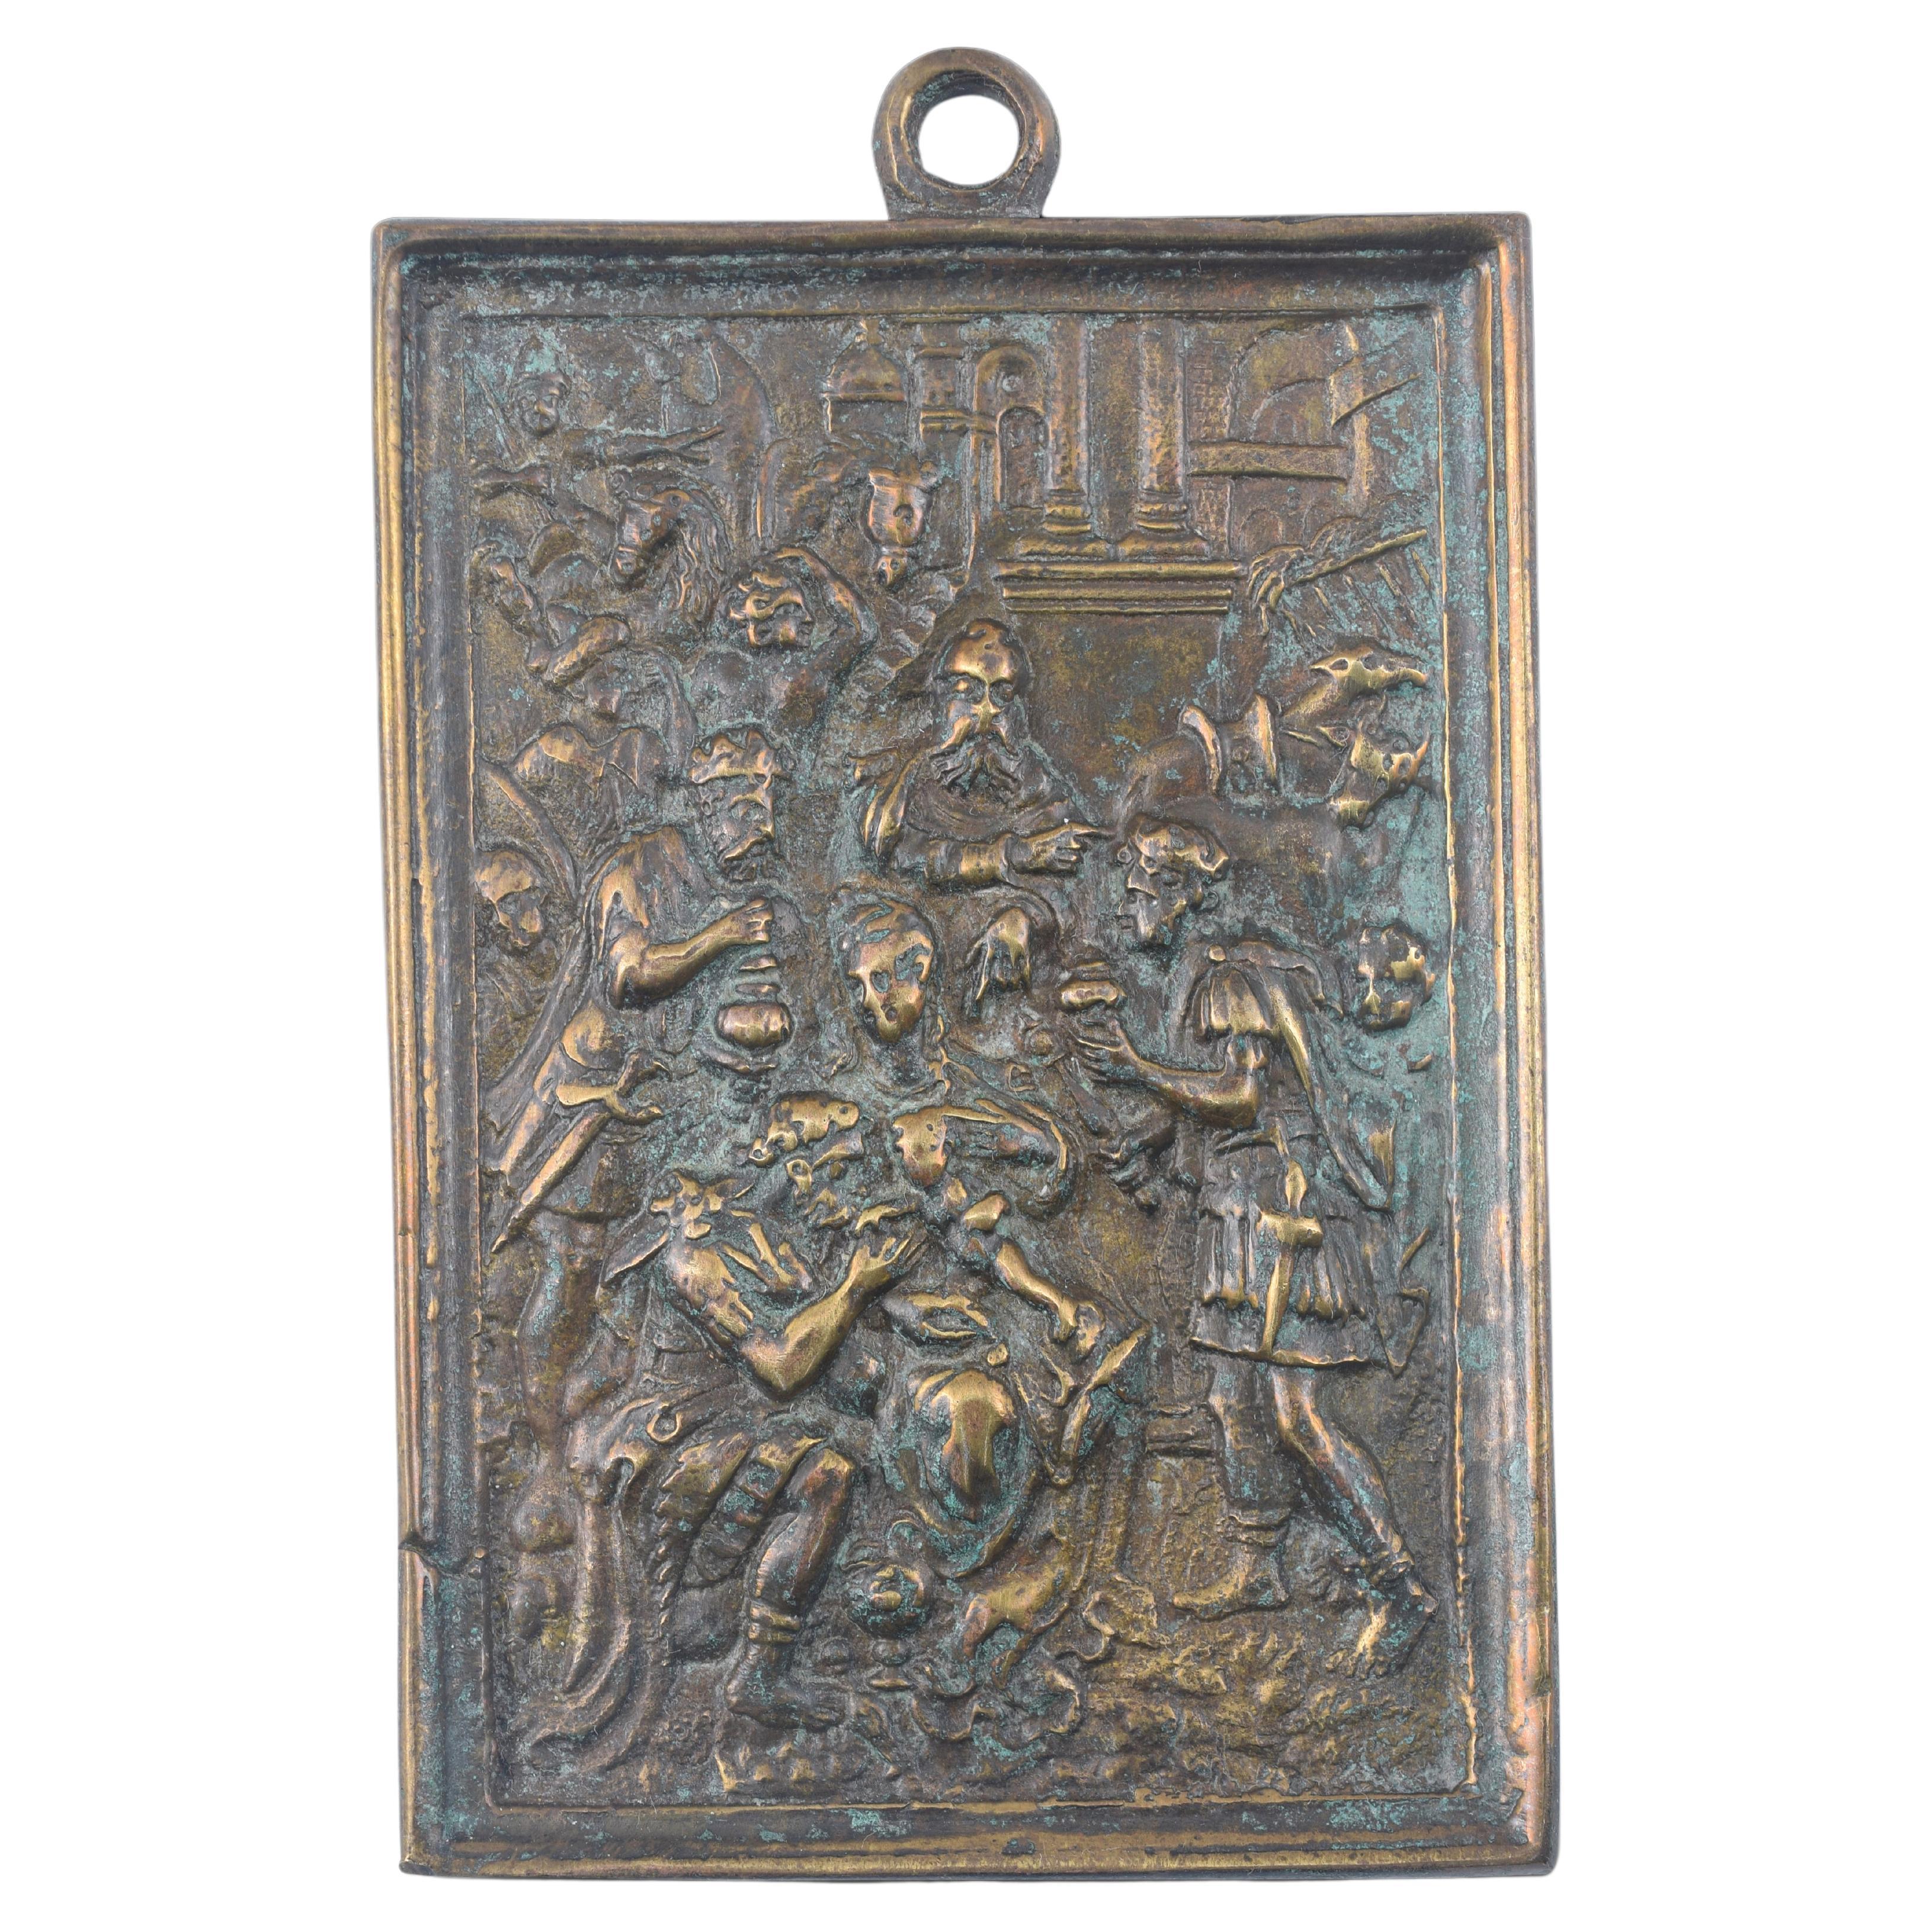 Plaque dévotionnelle, Adoration des mages Bronze. École espagnole, 17e siècle.